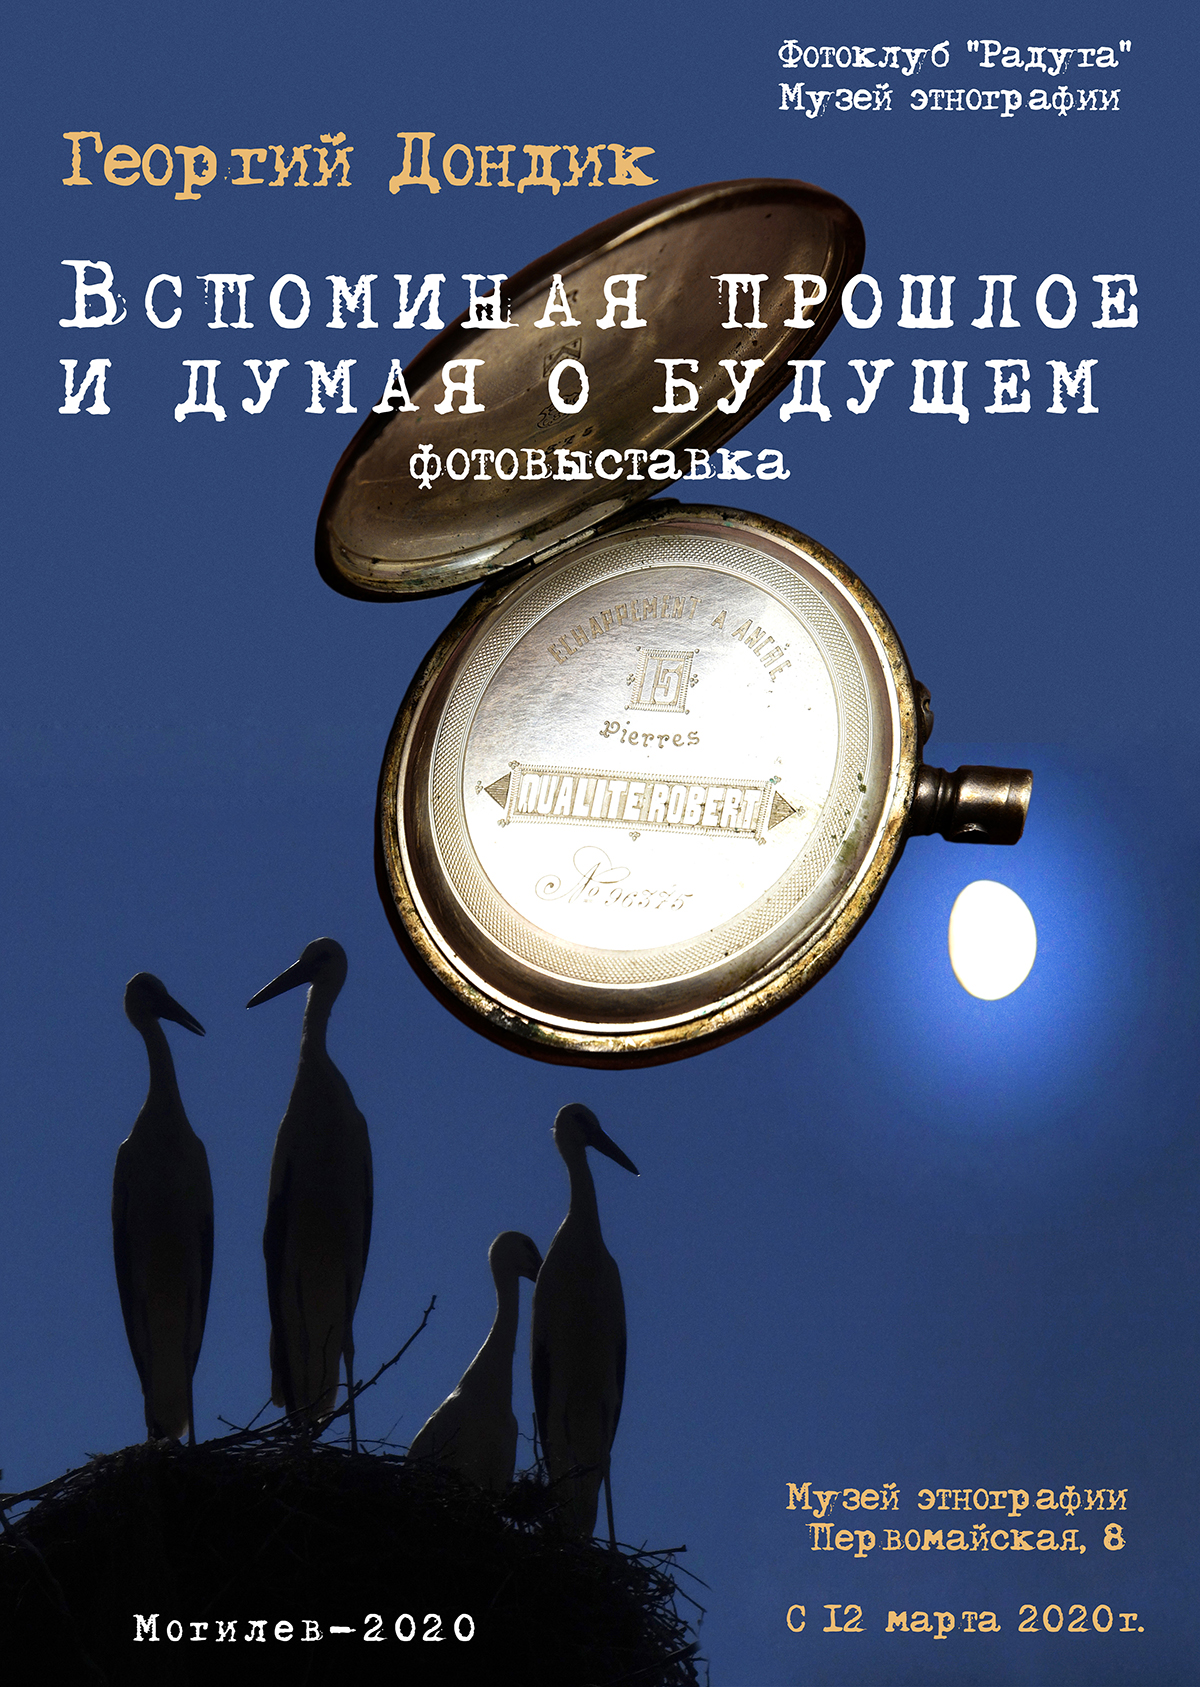 Фотовыставка Георгия Дондика откроется в музее этнографии Могилева 12 марта